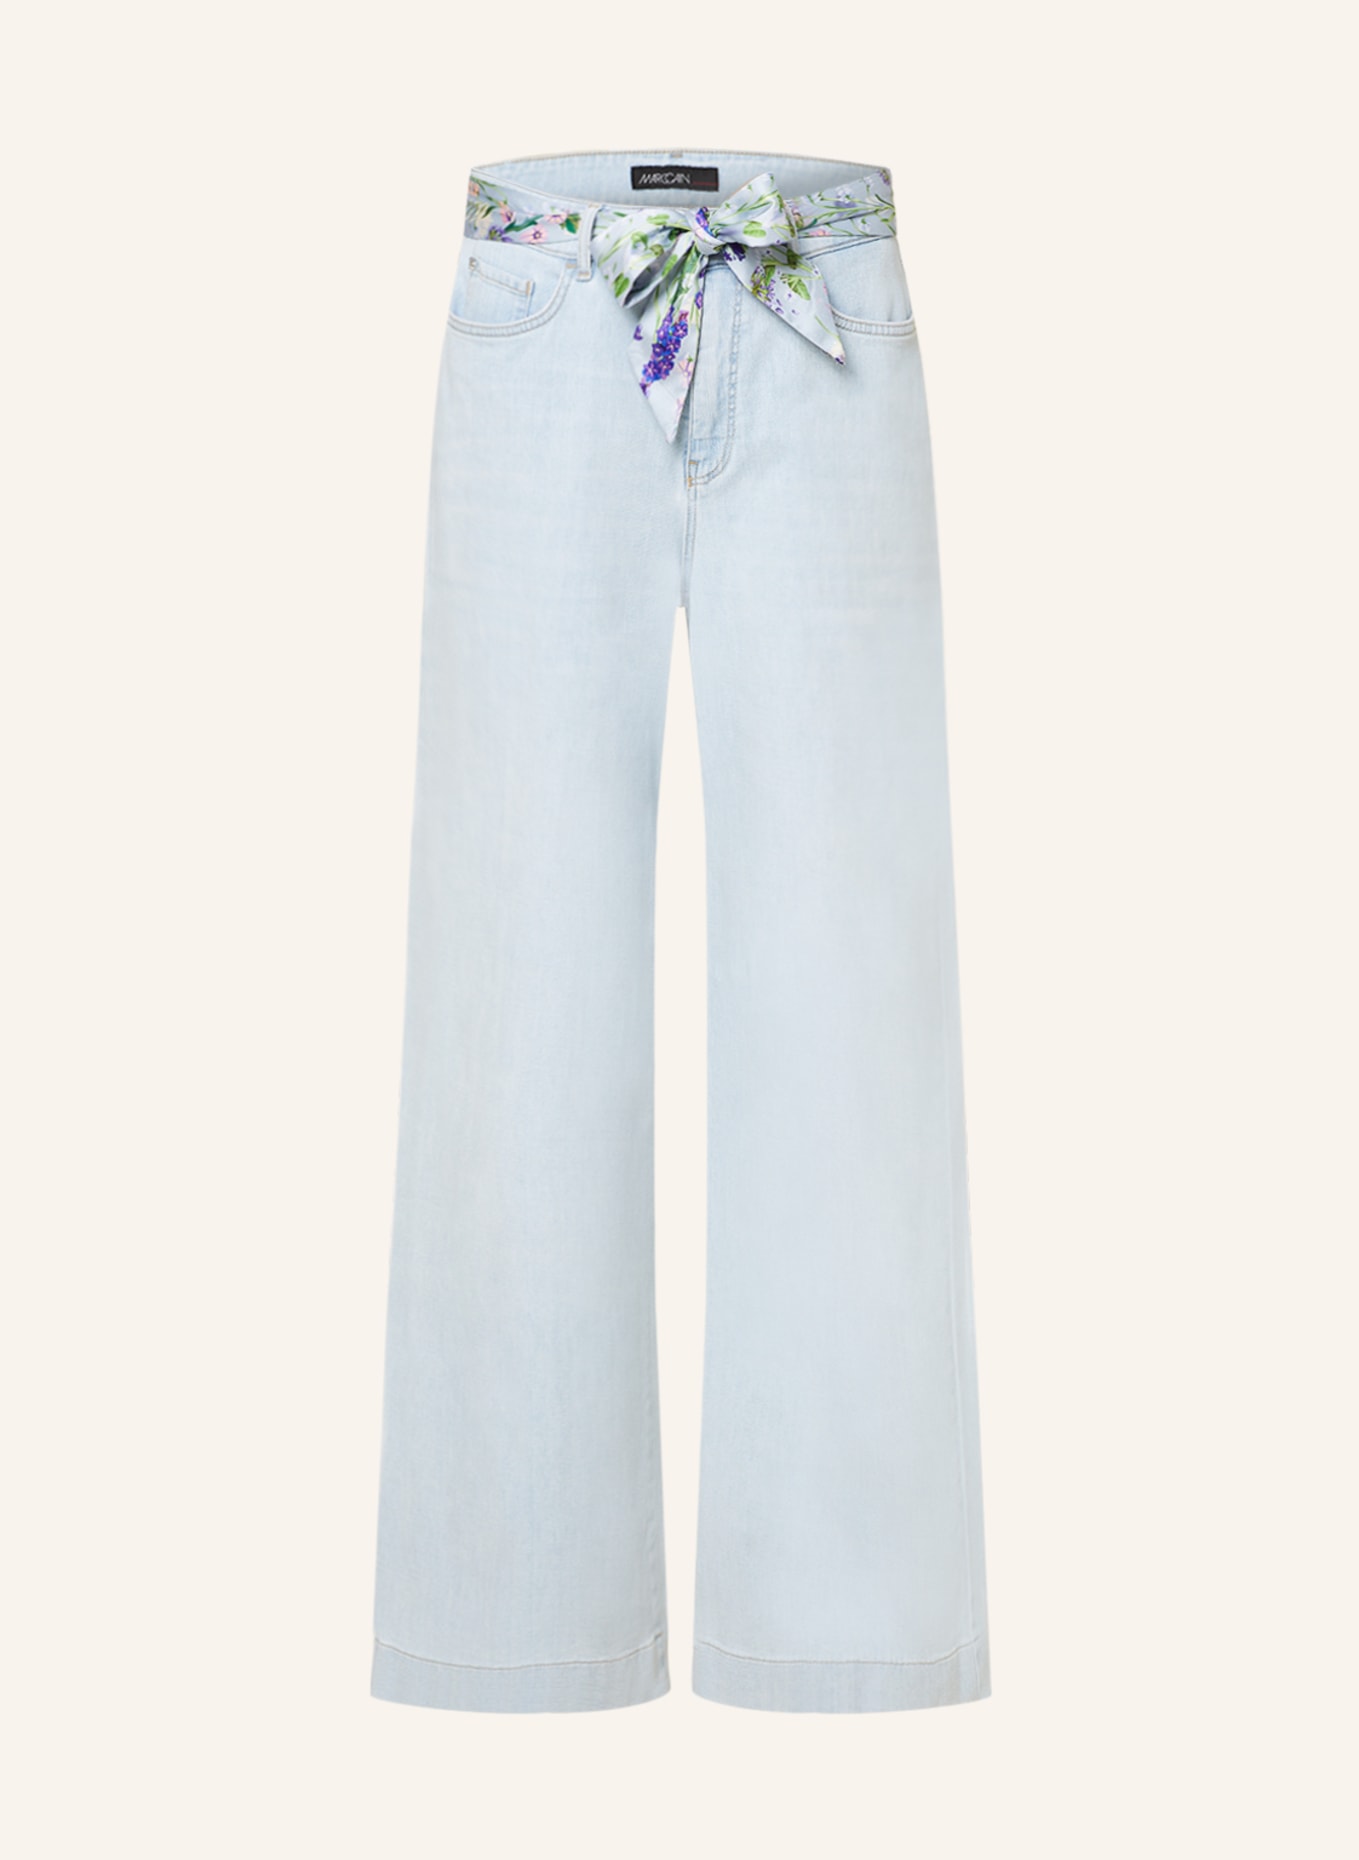 MARC CAIN Jeans WARRI, Farbe: 350 light denim (Bild 1)